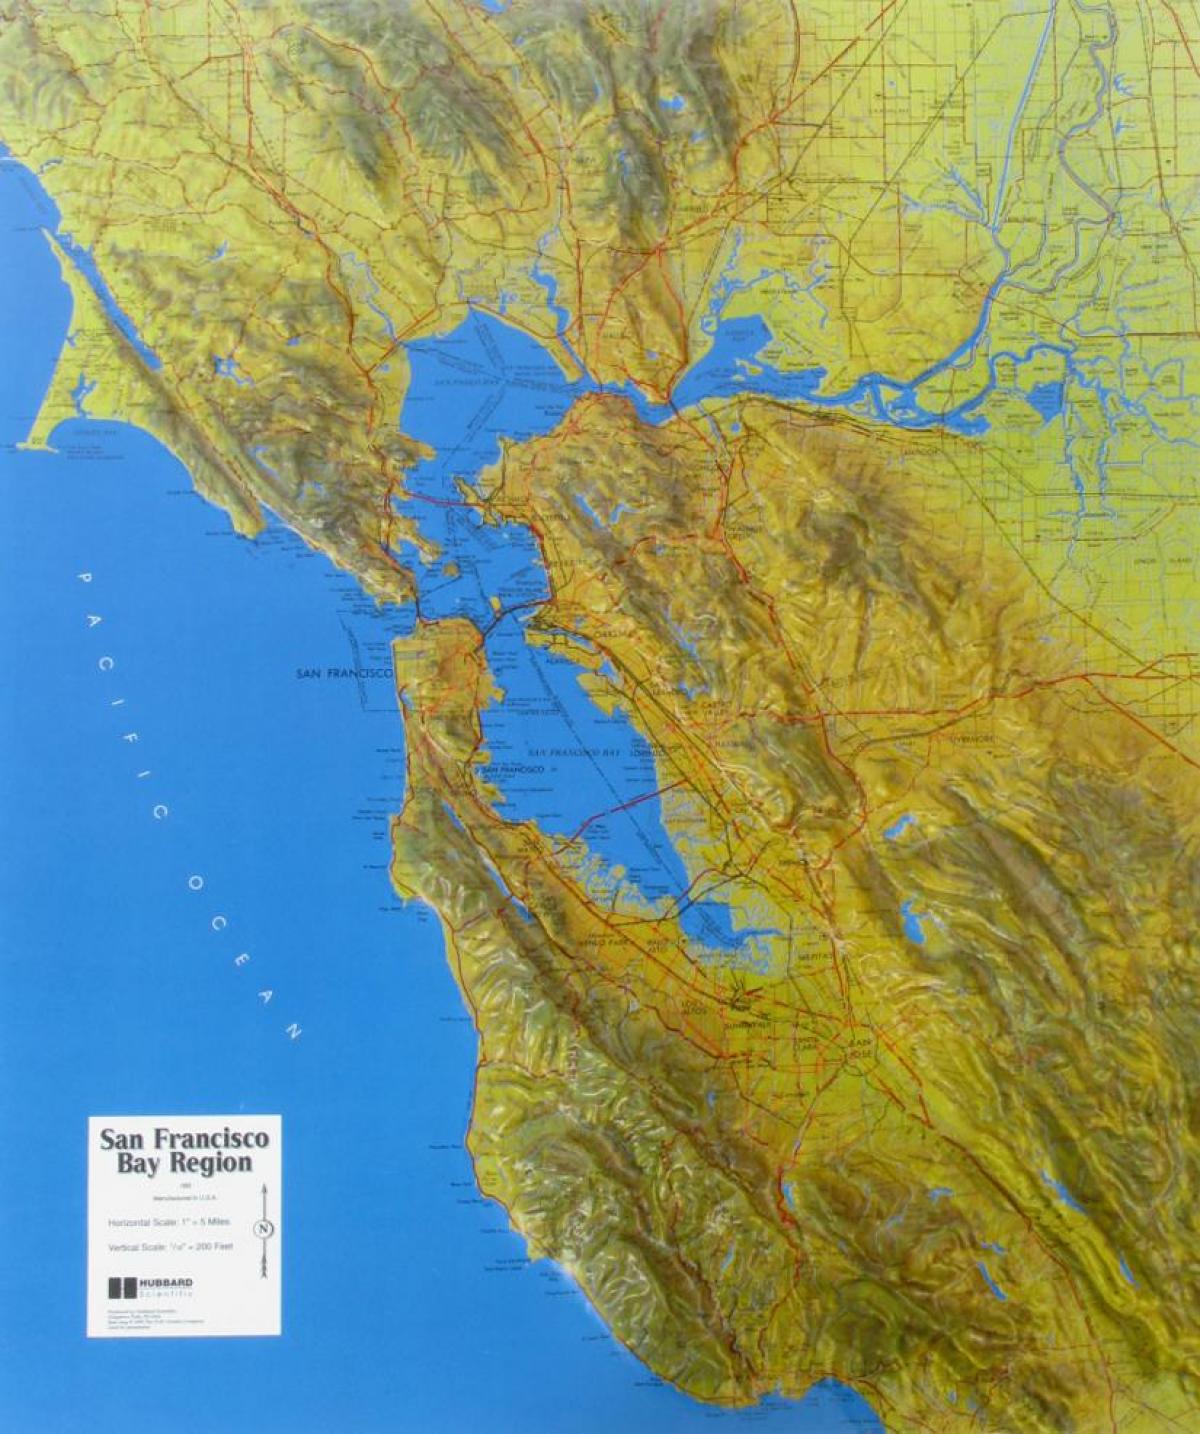 Peta dari San Francisco lega